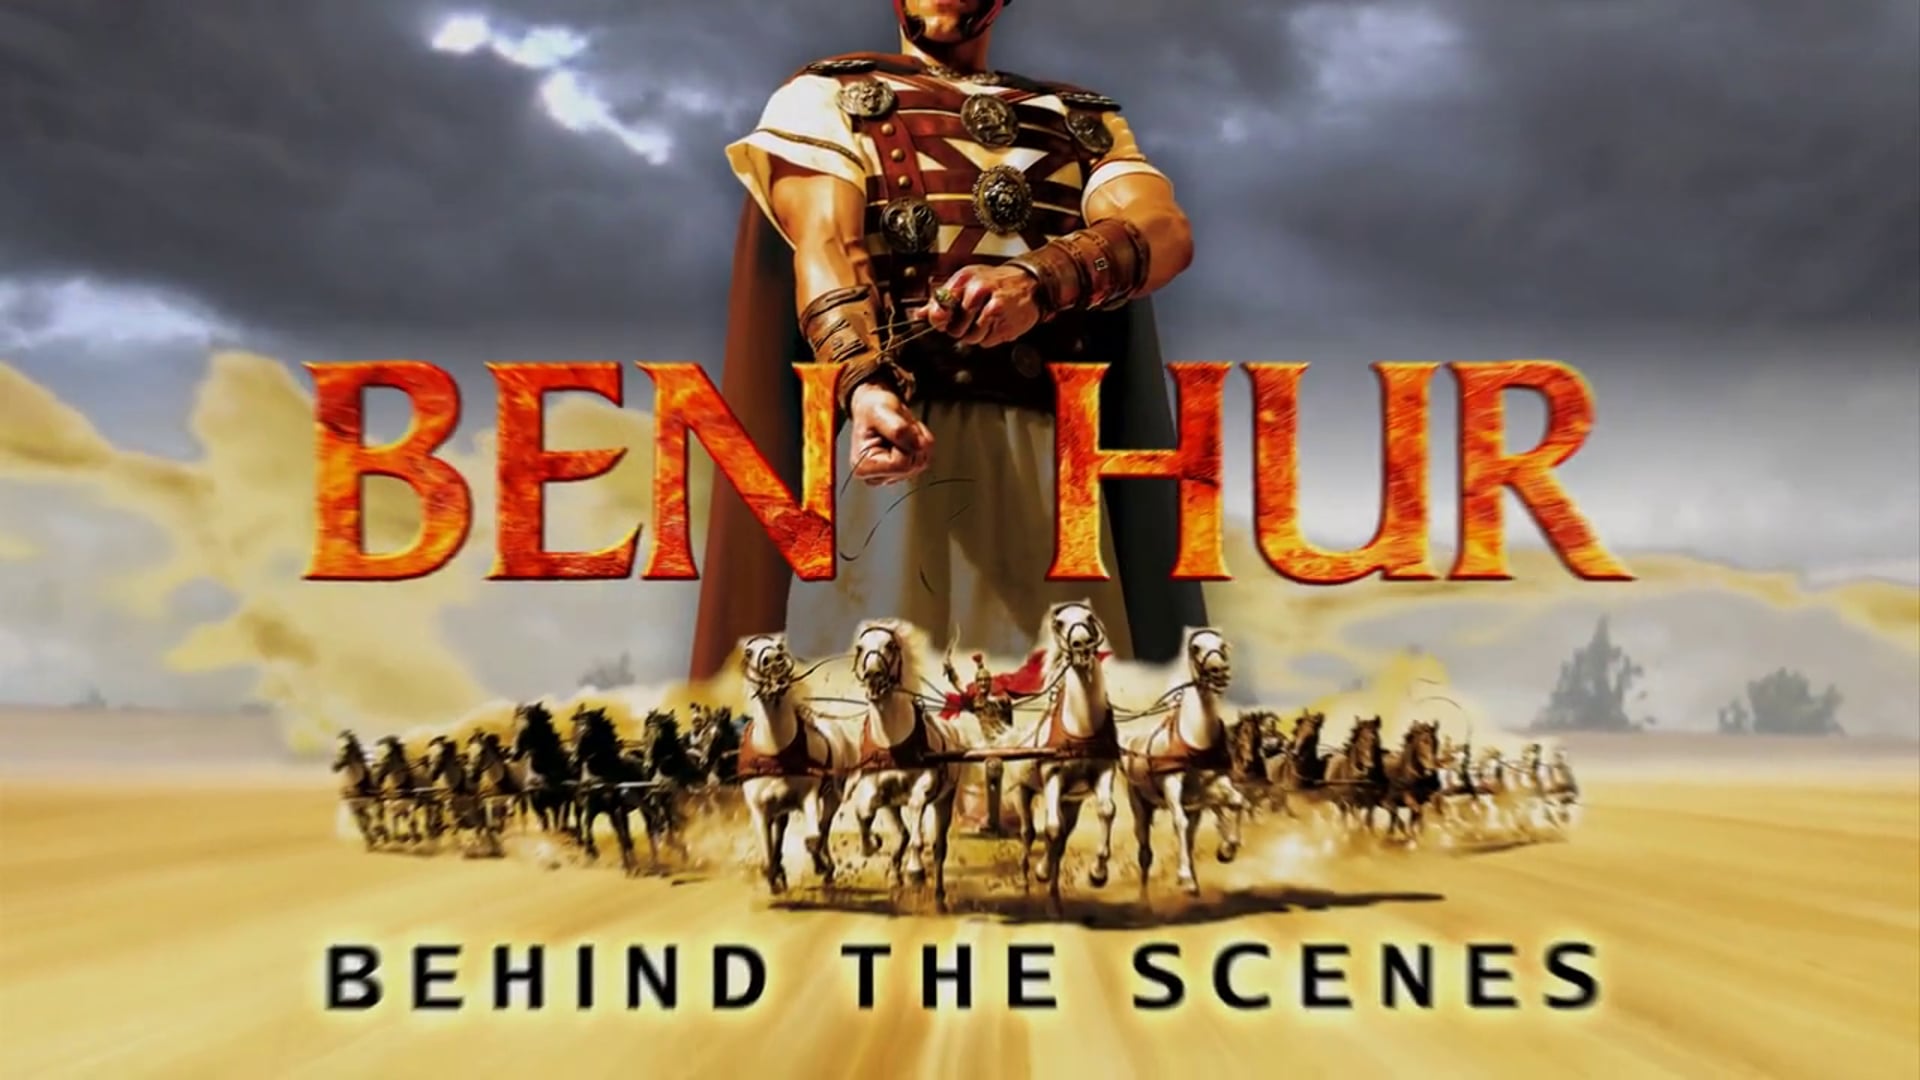 BEN HUR - Behind The Scenes